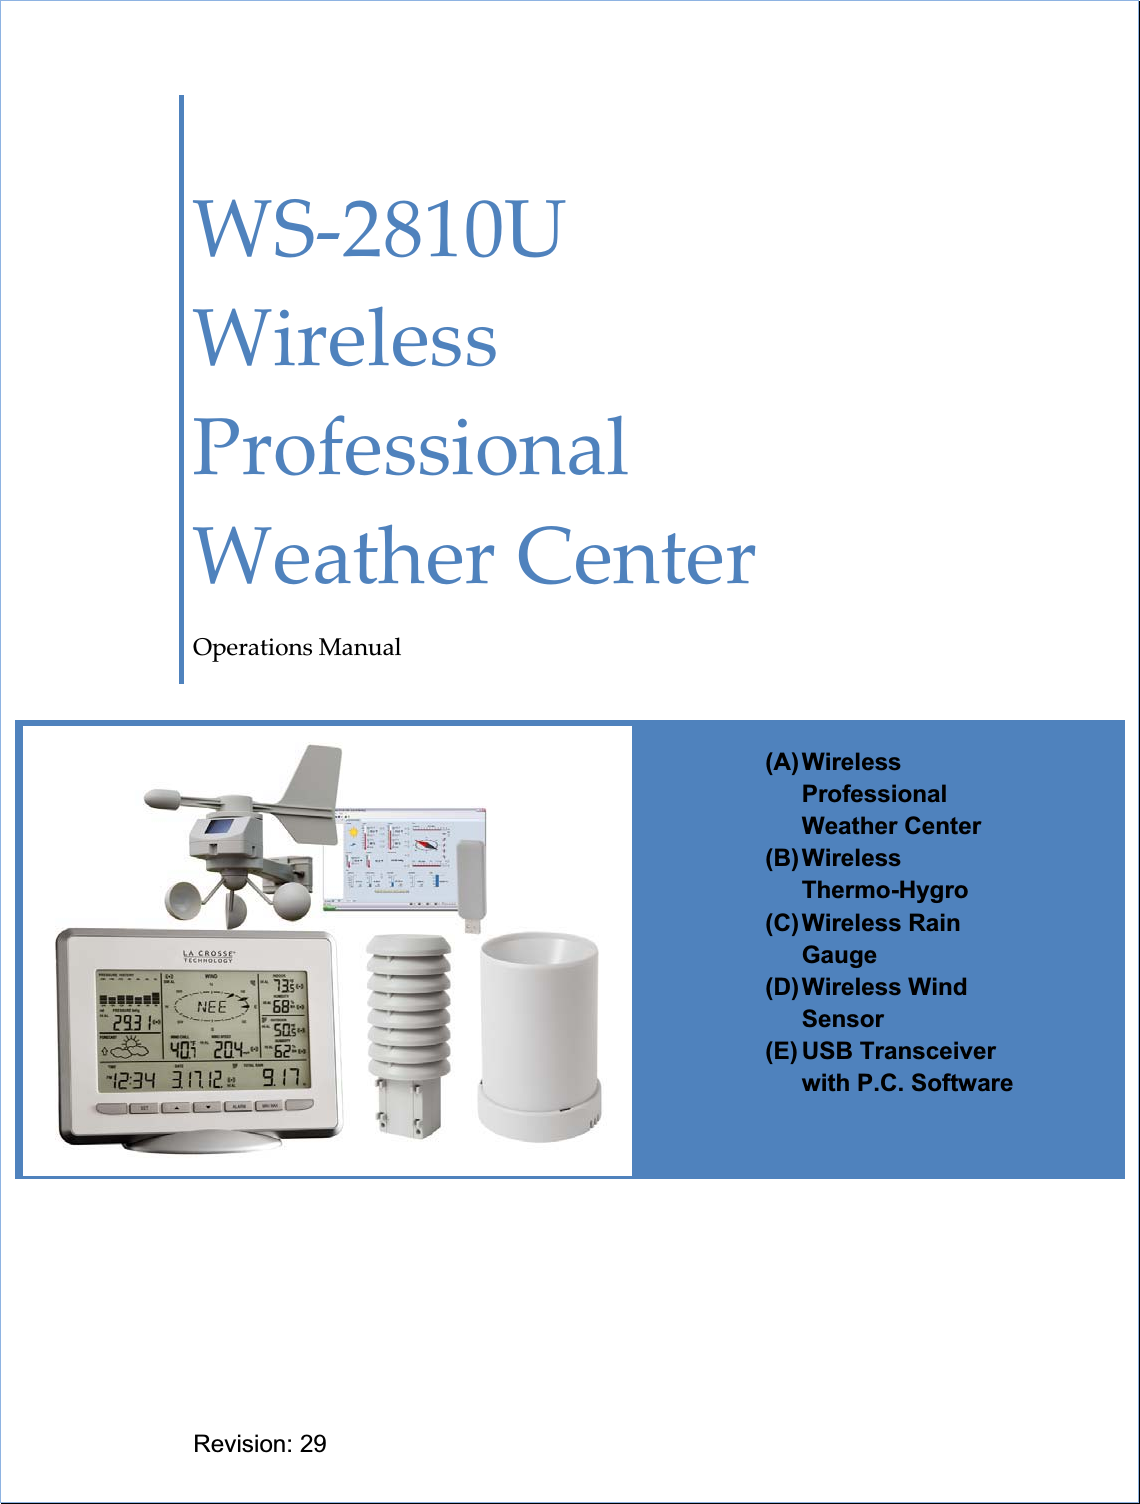 ȱWSȬ2810UȱWirelessȱProfessionalȱWeatherȱCenterȱOperationsȱManualȱRevision: 29 (A) Wireless ProfessionalWeather Center (B) Wireless   Thermo-Hygro (C) Wireless  Rain Gauge (D) Wireless  Wind Sensor(E) USB  Transceiver with P.C. Software 